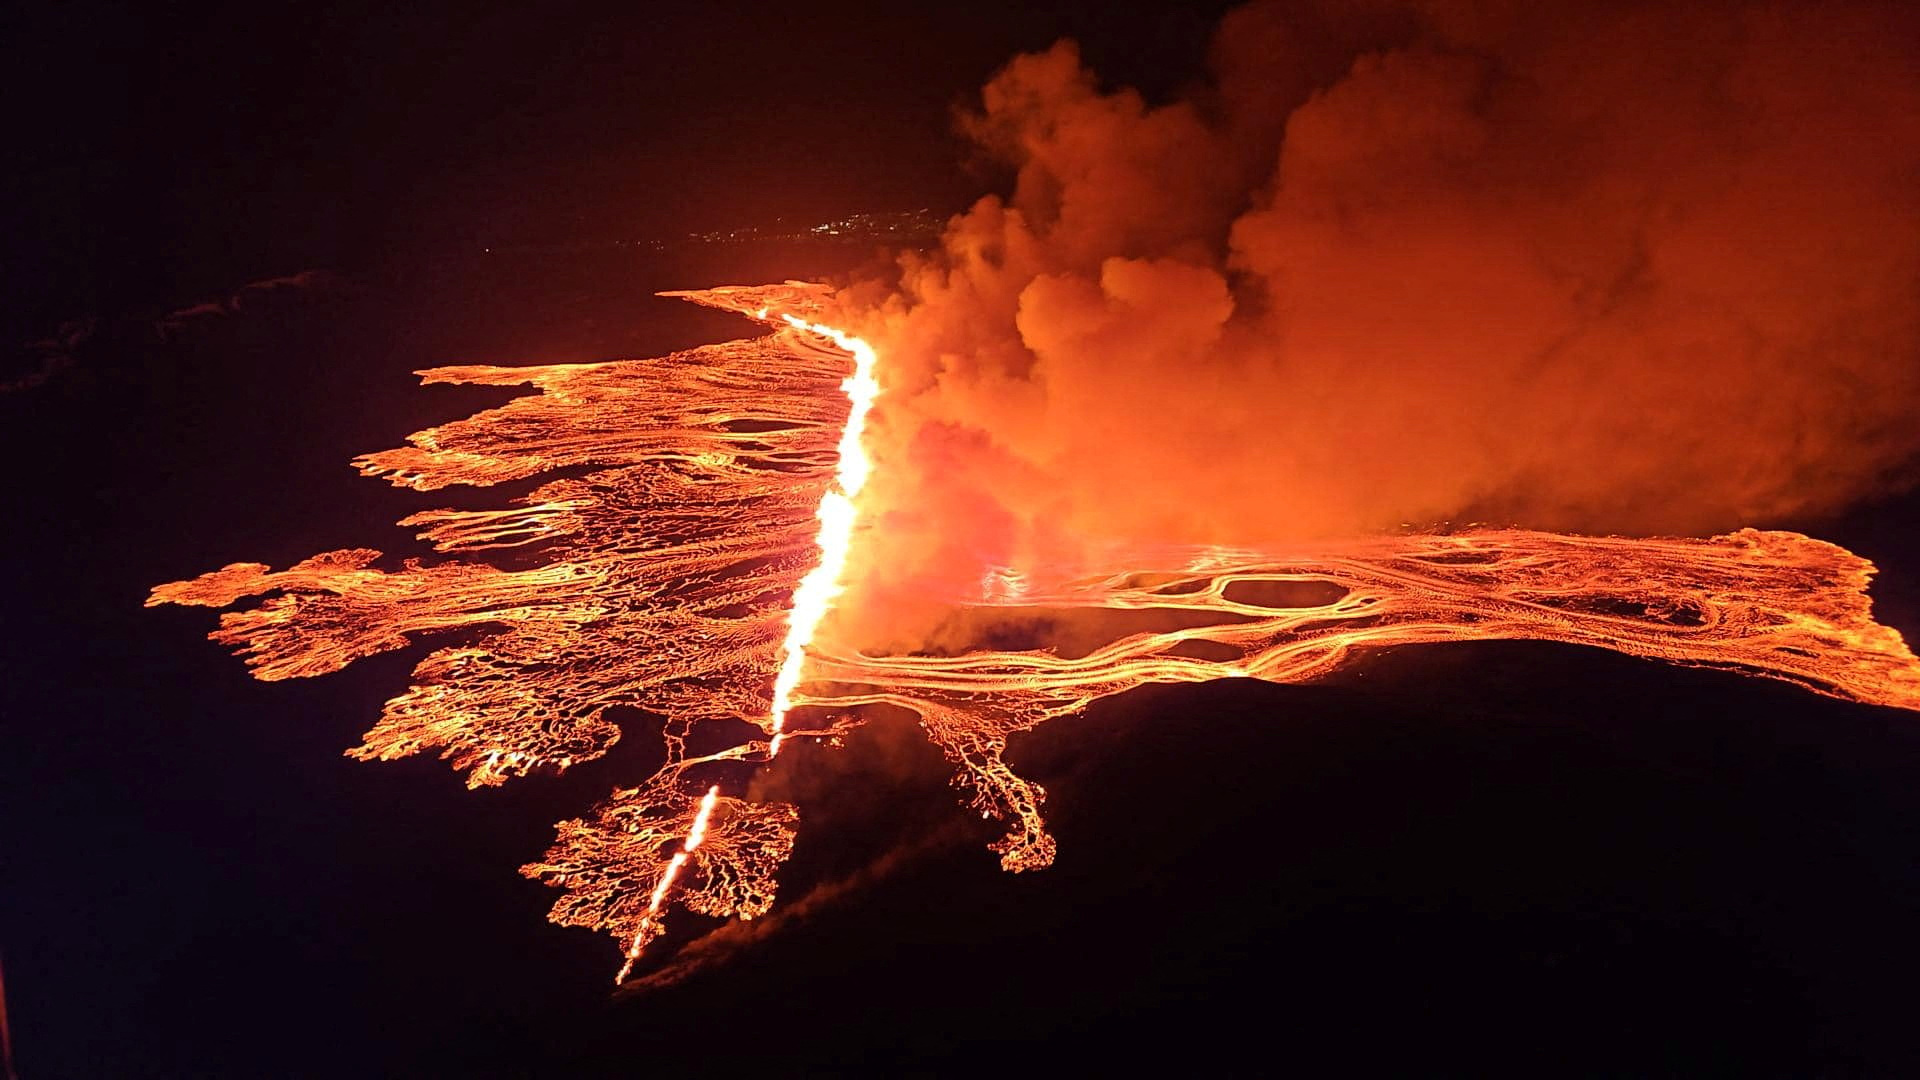 冰岛气象局证实西南端雷克雅内斯半岛火山16日晚间喷发，这是继去年12月至今第4度喷发，裂缝口长达2.9公里，源源不绝的熔岩喷泉喷射而出后迅速向两侧蔓延，亮橙熔岩与漆黑夜空形成鲜明对比。路透